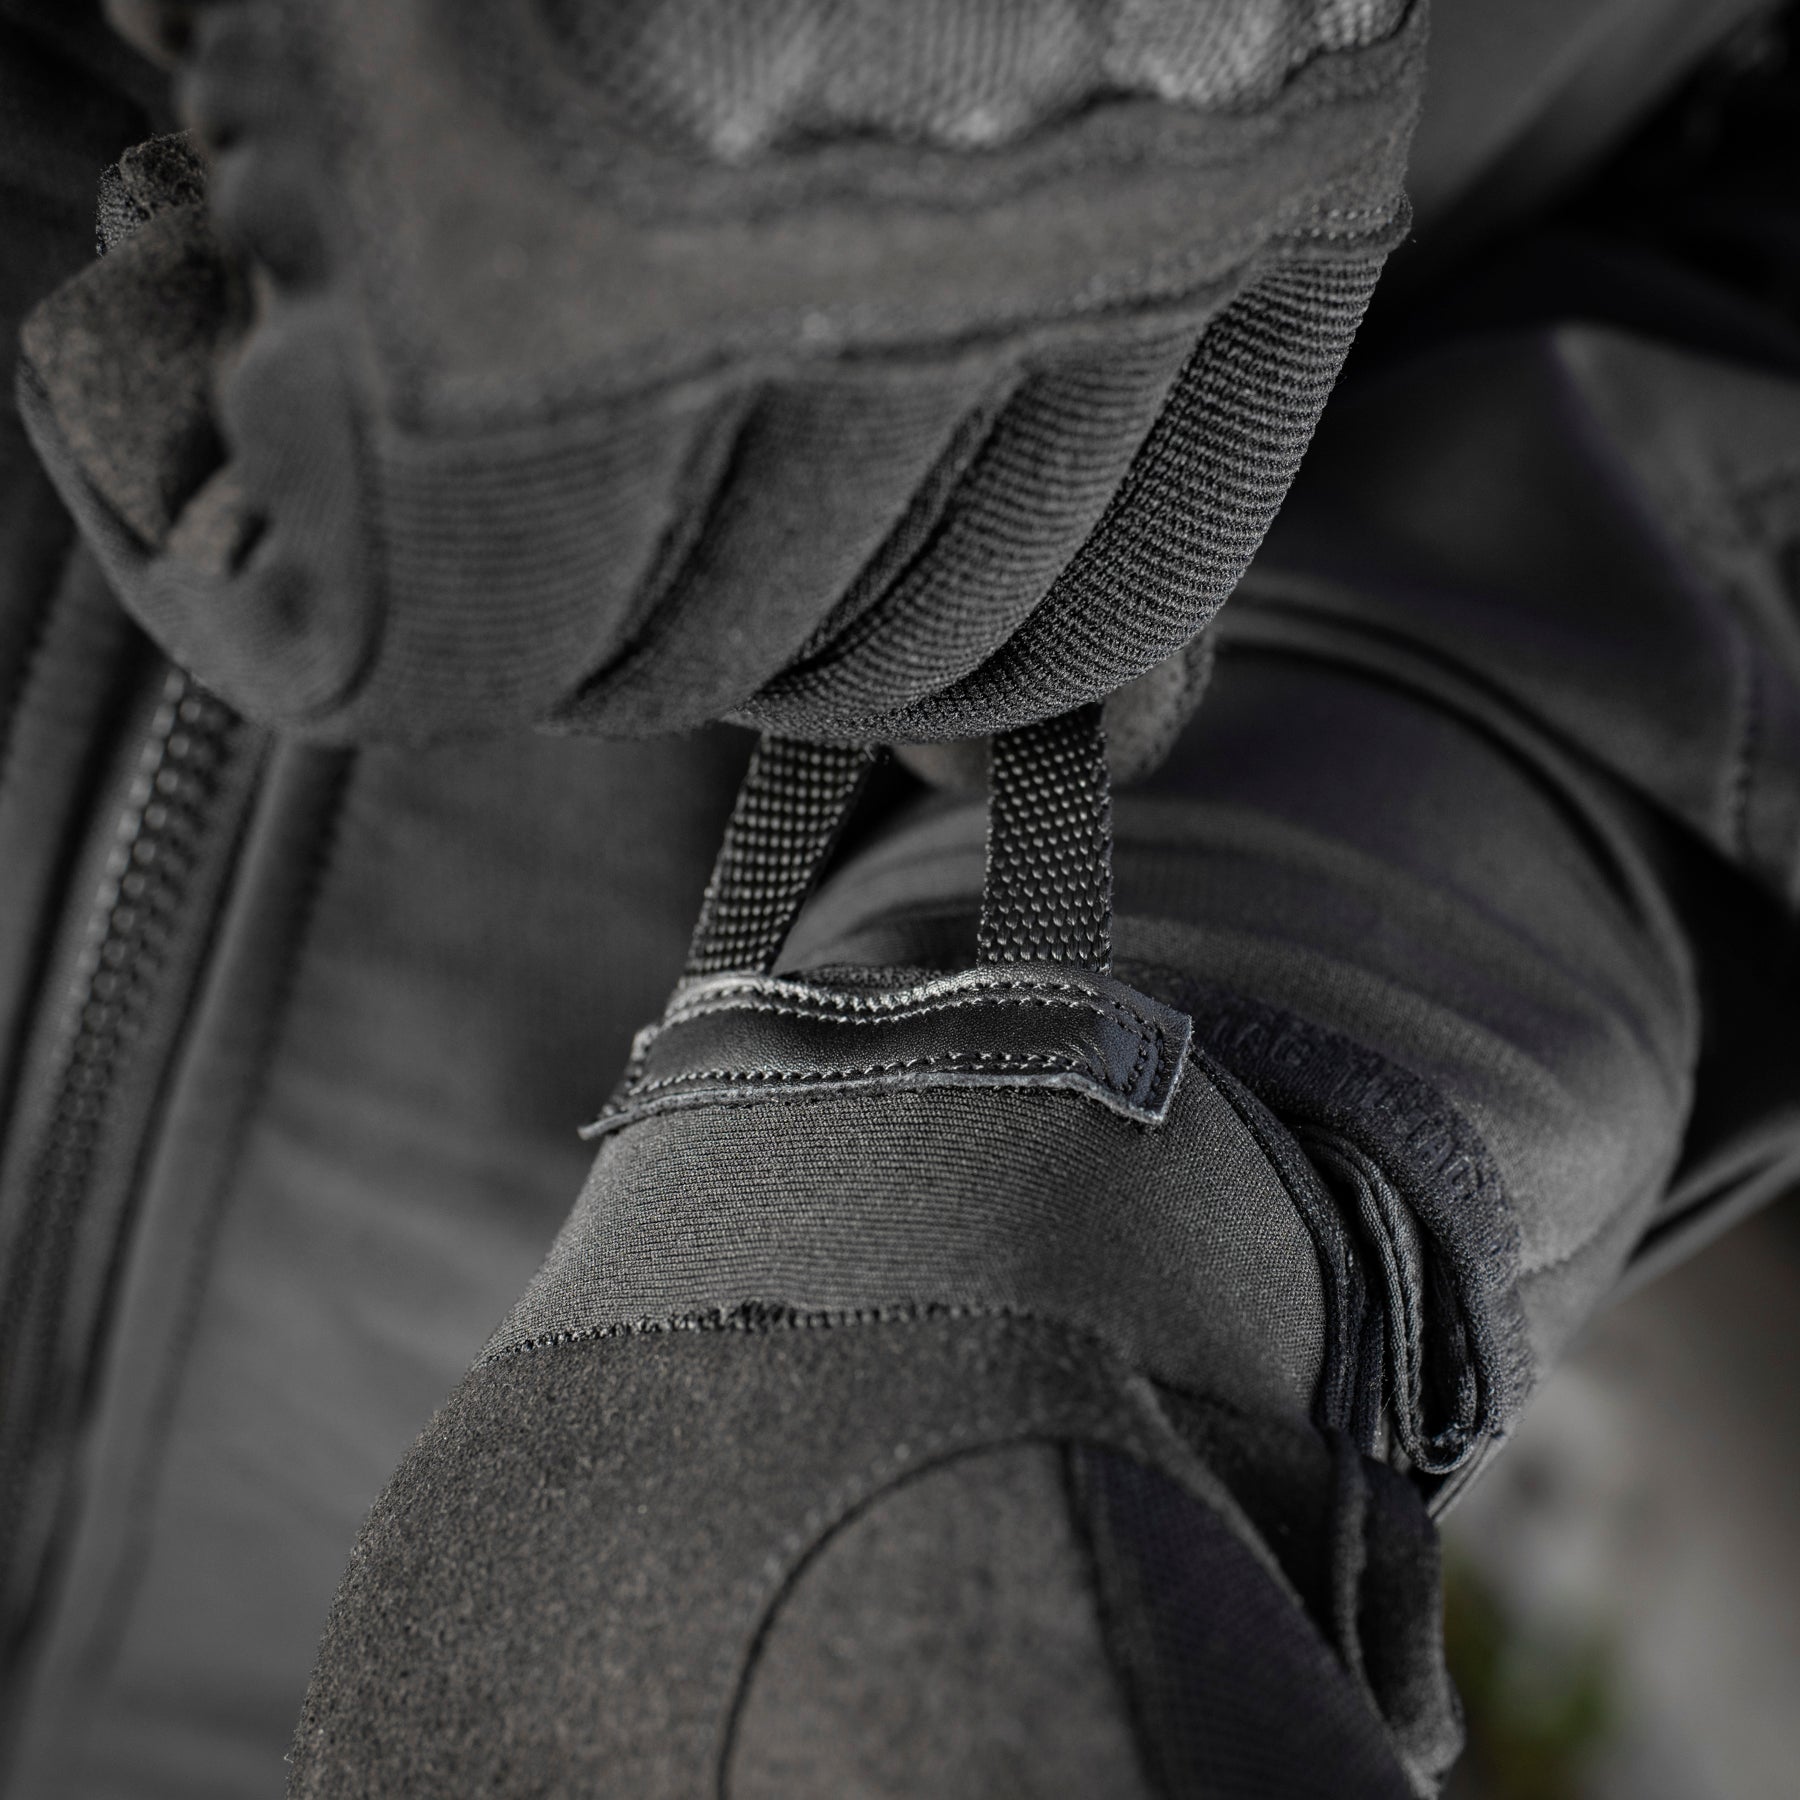 M-Tac Gloves Assault Tactical Mk.3 Olive / M